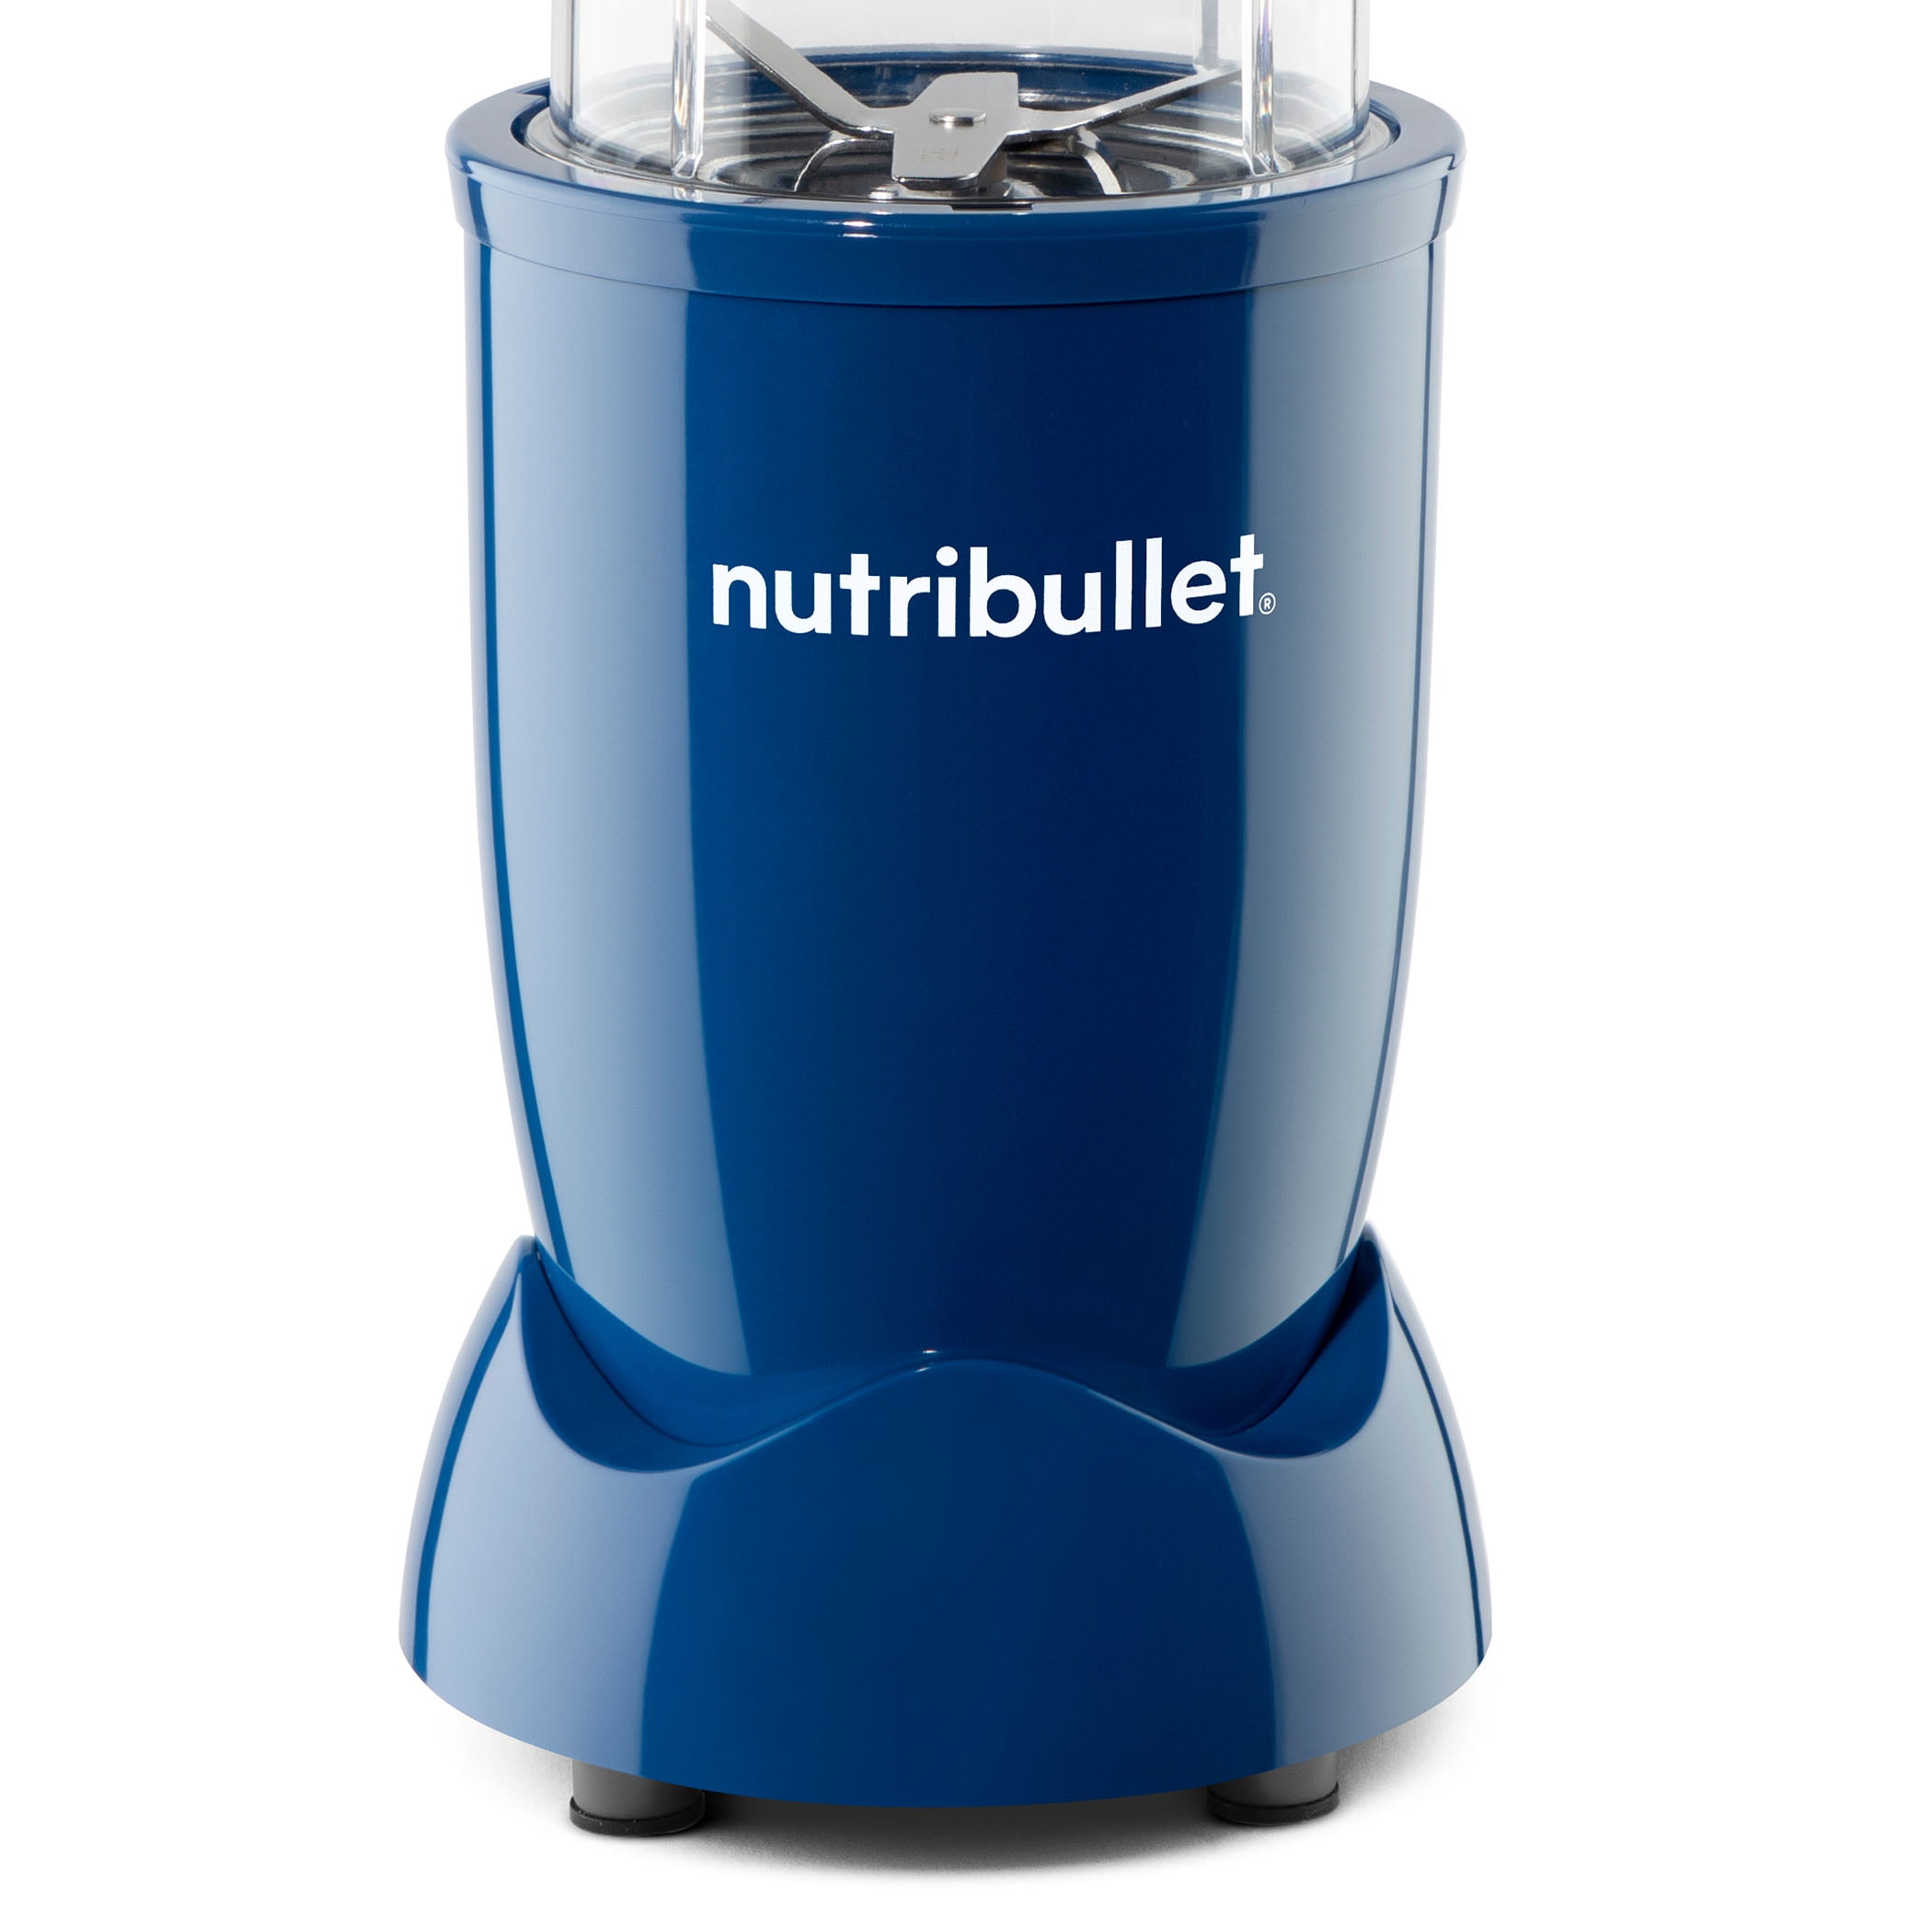 Nutribullet Blender Review - Tech Advisor